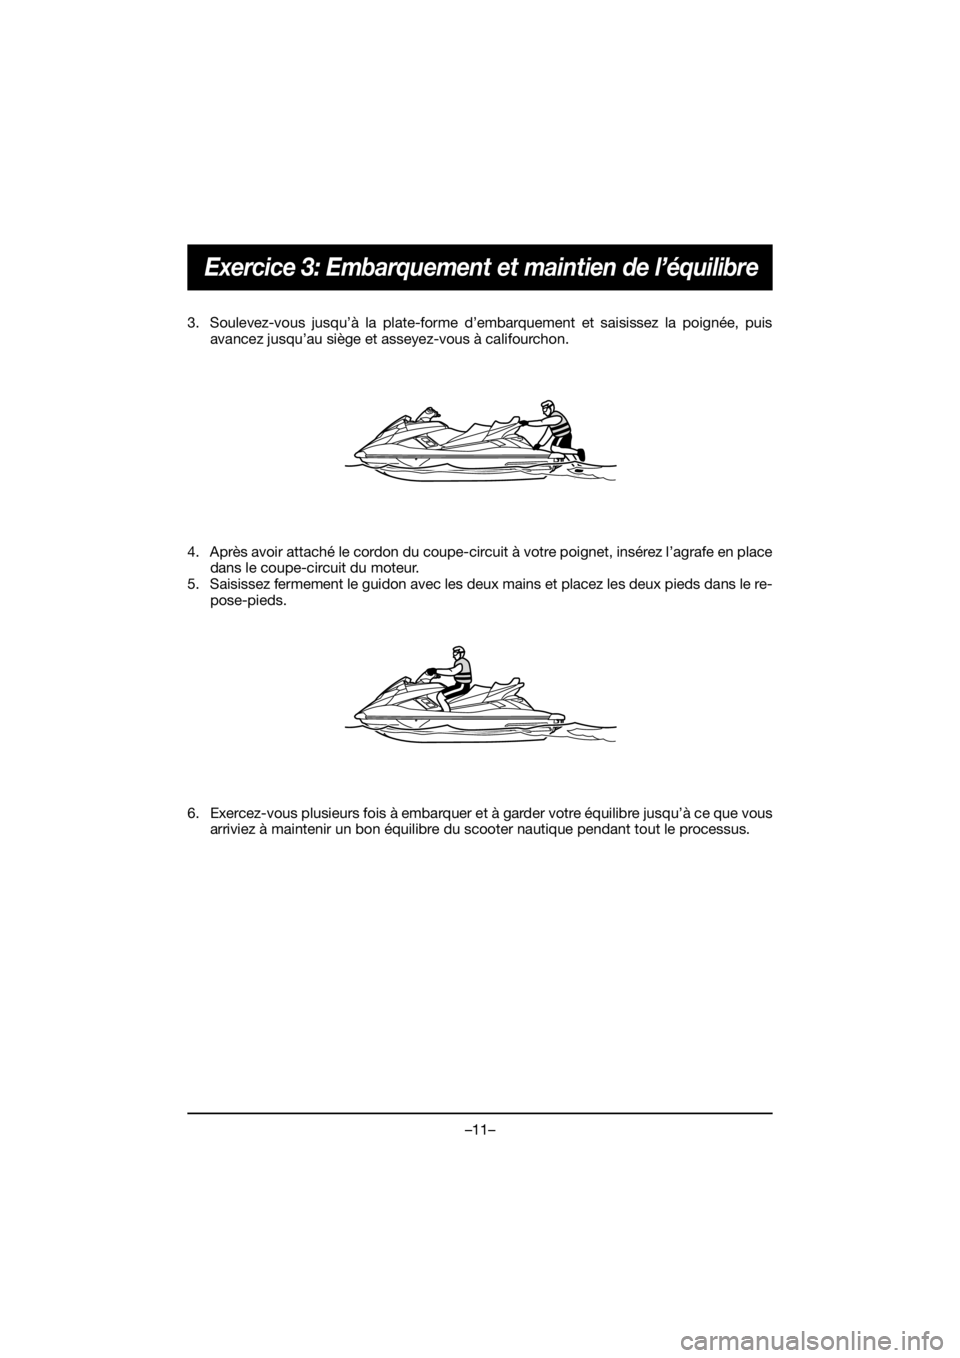 YAMAHA FX HO 2020  Manuale de Empleo (in Spanish) –11–
Exercice 3: Embarquement et maintien de l’équilibre
3. Soulevez-vous jusqu’à la plate-forme d’embarquement et saisissez la poignée, puis
avancez jusqu’au siège et asseyez-vous à 